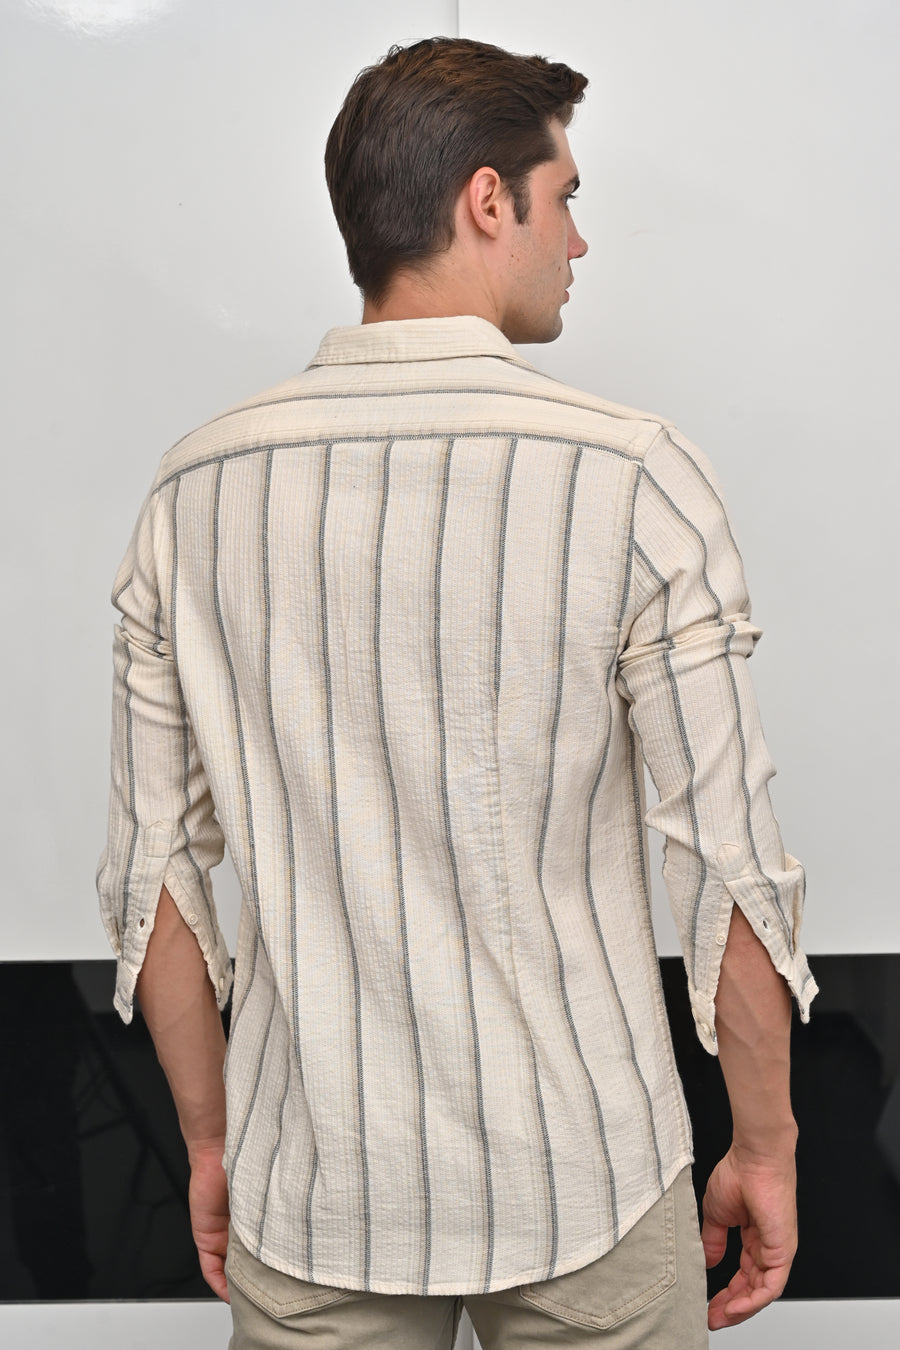 Bella - Structured Striped Shirt - Beige